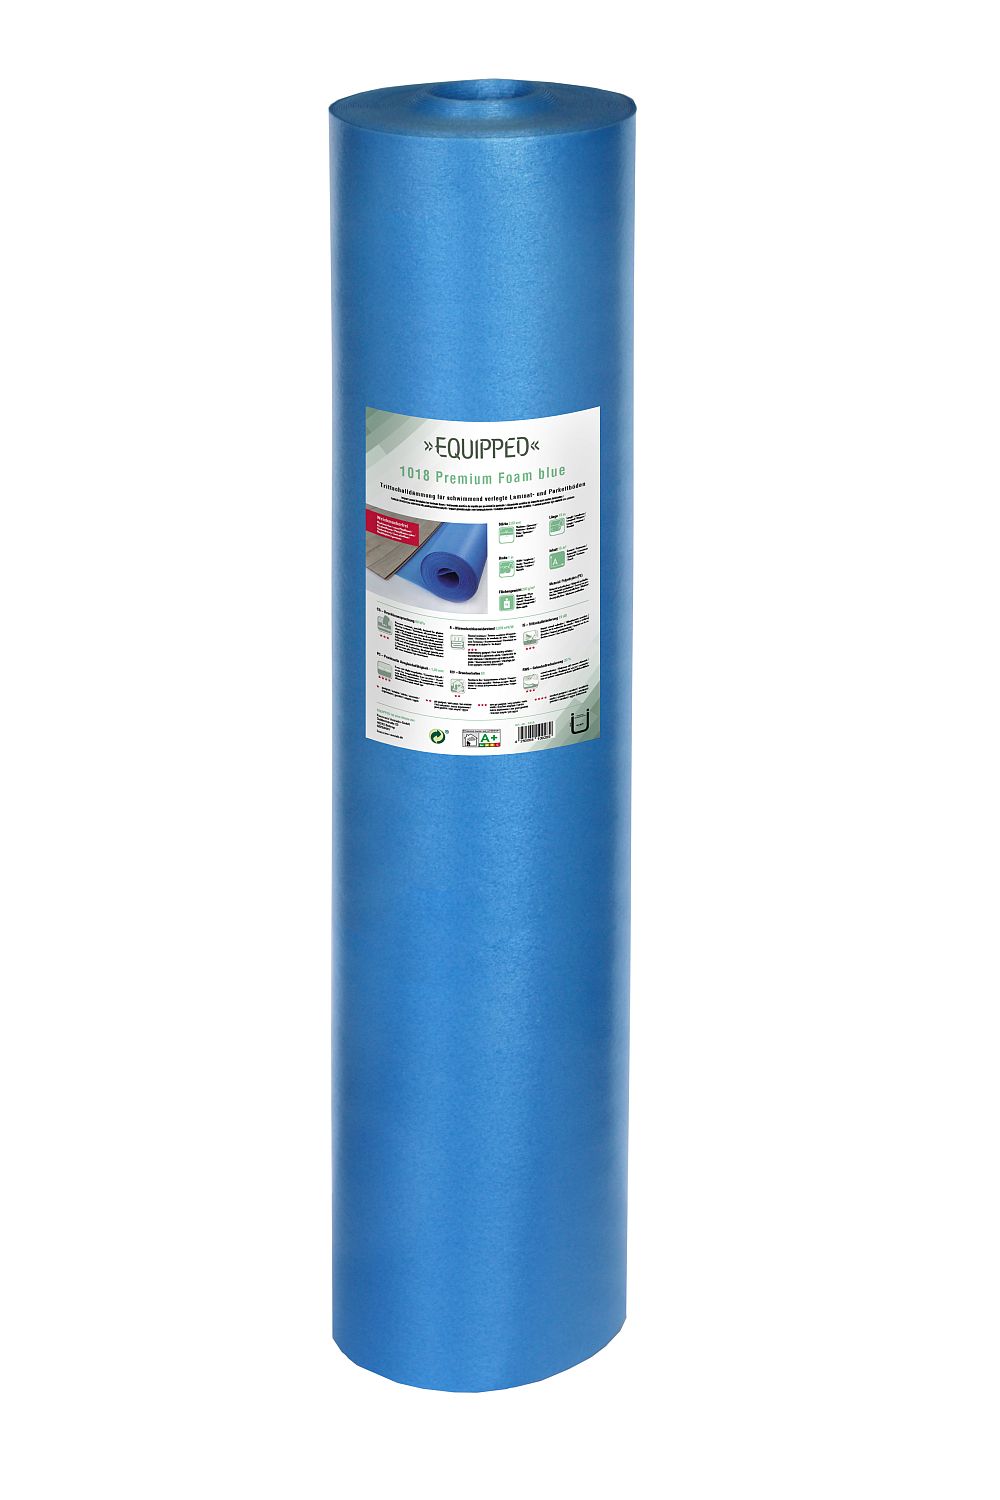 EQUIPPED 1018 Premium Foam blue - 25m²/Rolle - 2 Rollen/Beutel - Breite 1m - Unterlage / Trittschalldämmung für Laminat